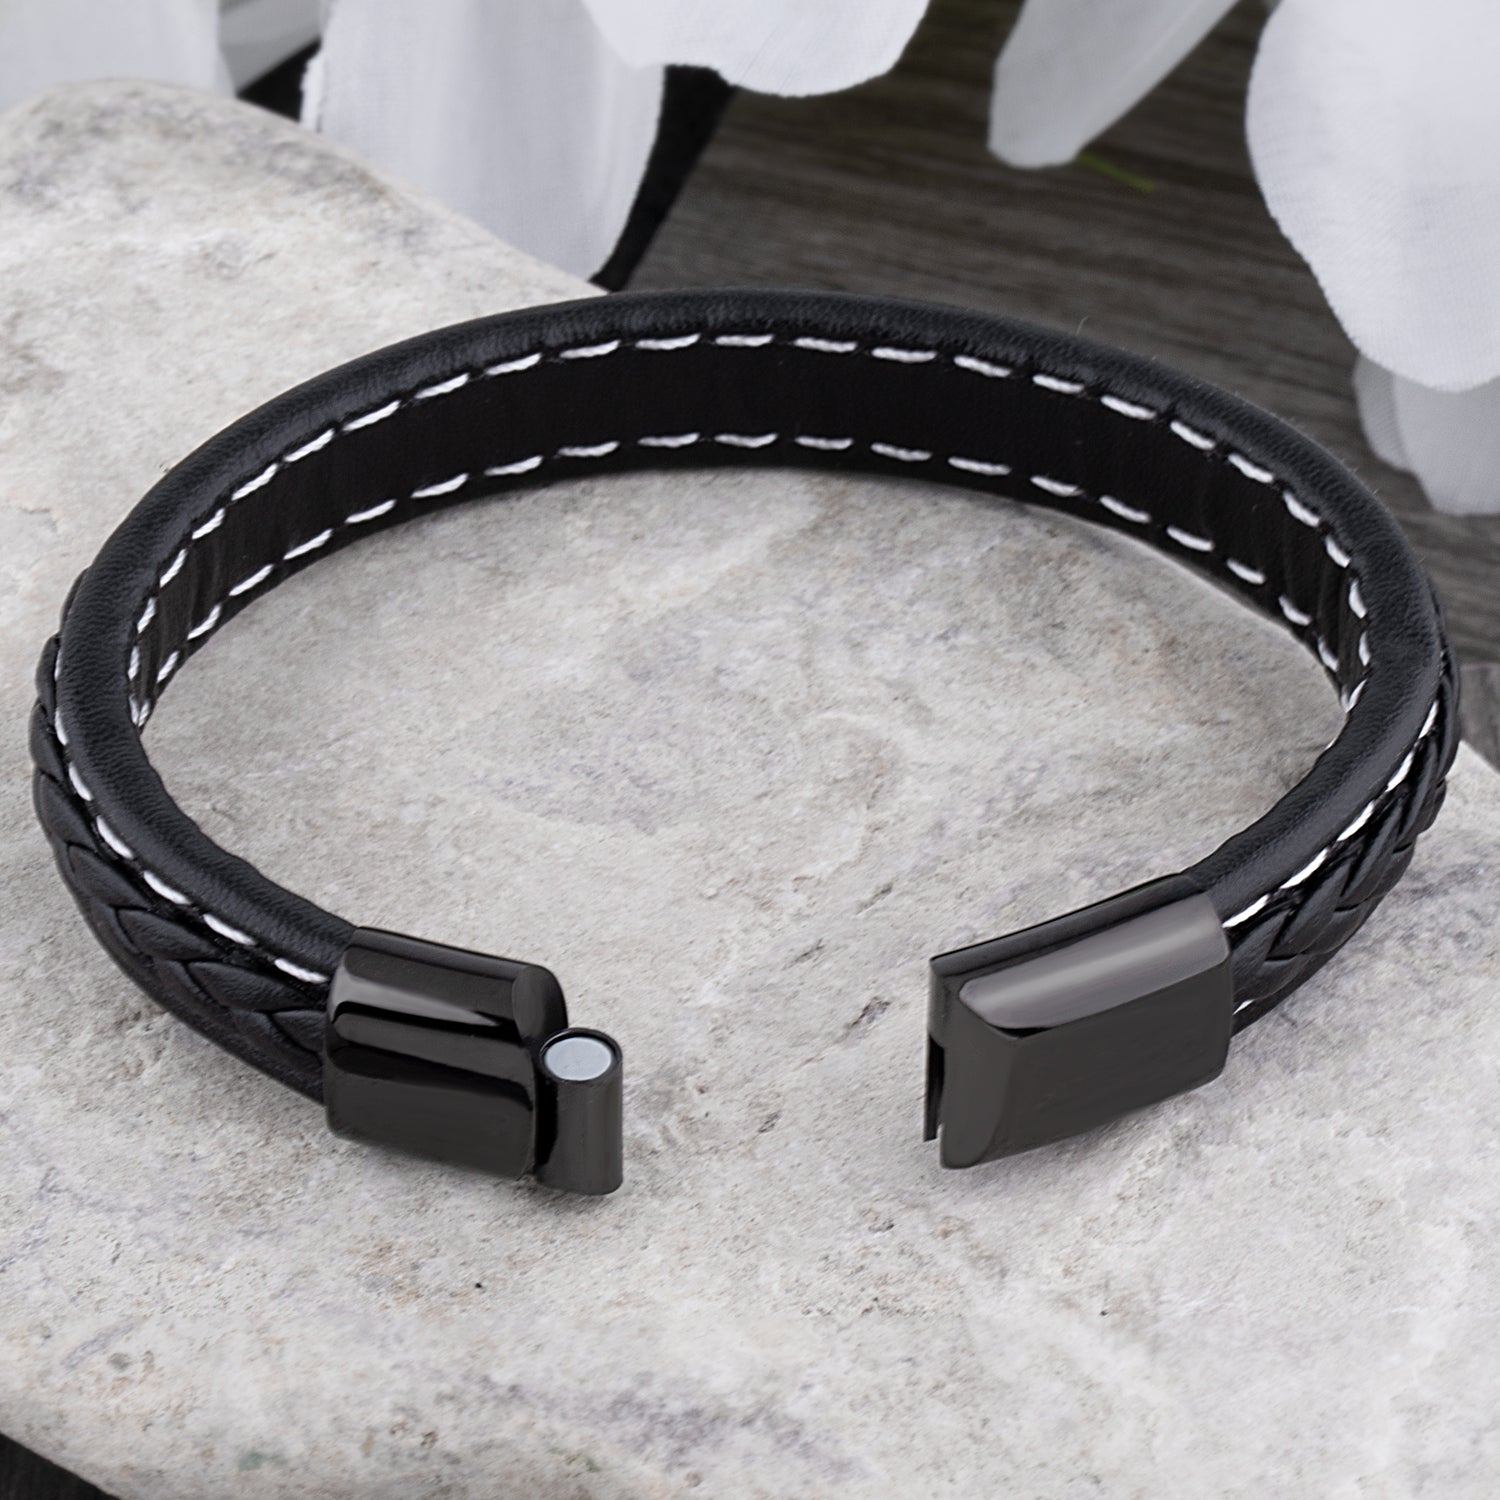 Men's Stainless Steel Black Braided Leather Bracelet - SSLB102BKBK